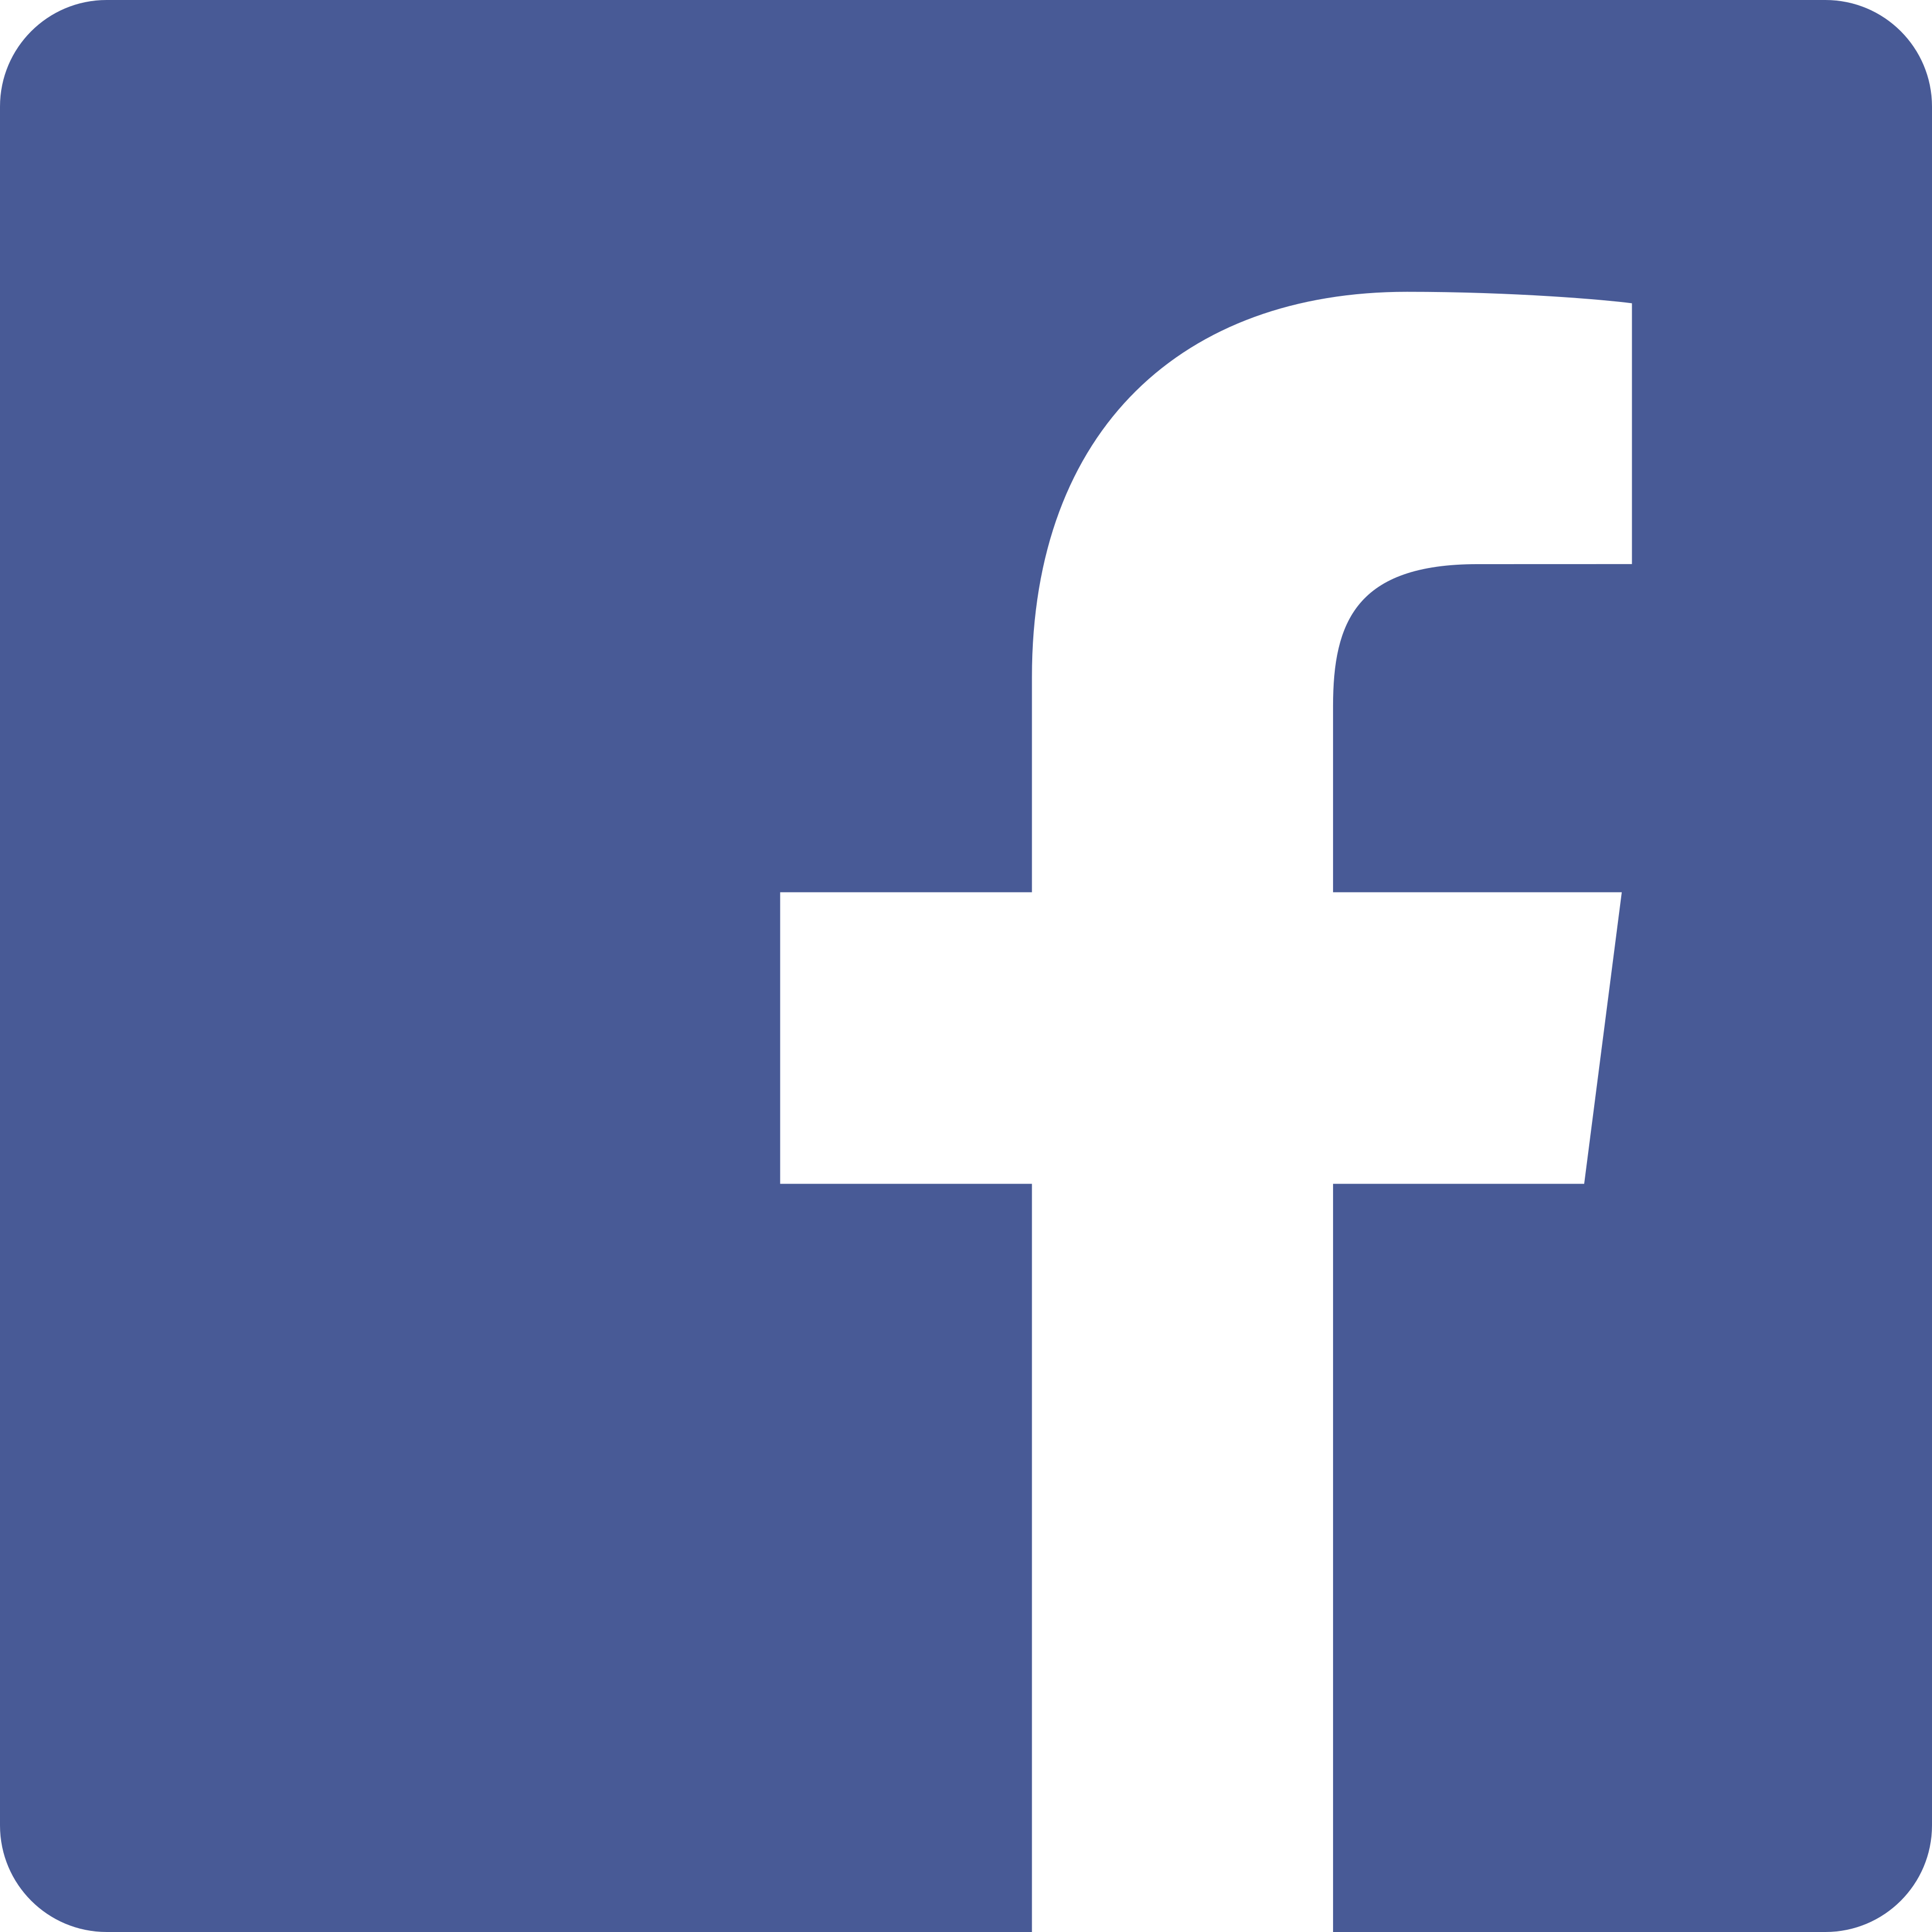 Facebook conheça o nosso Facebook